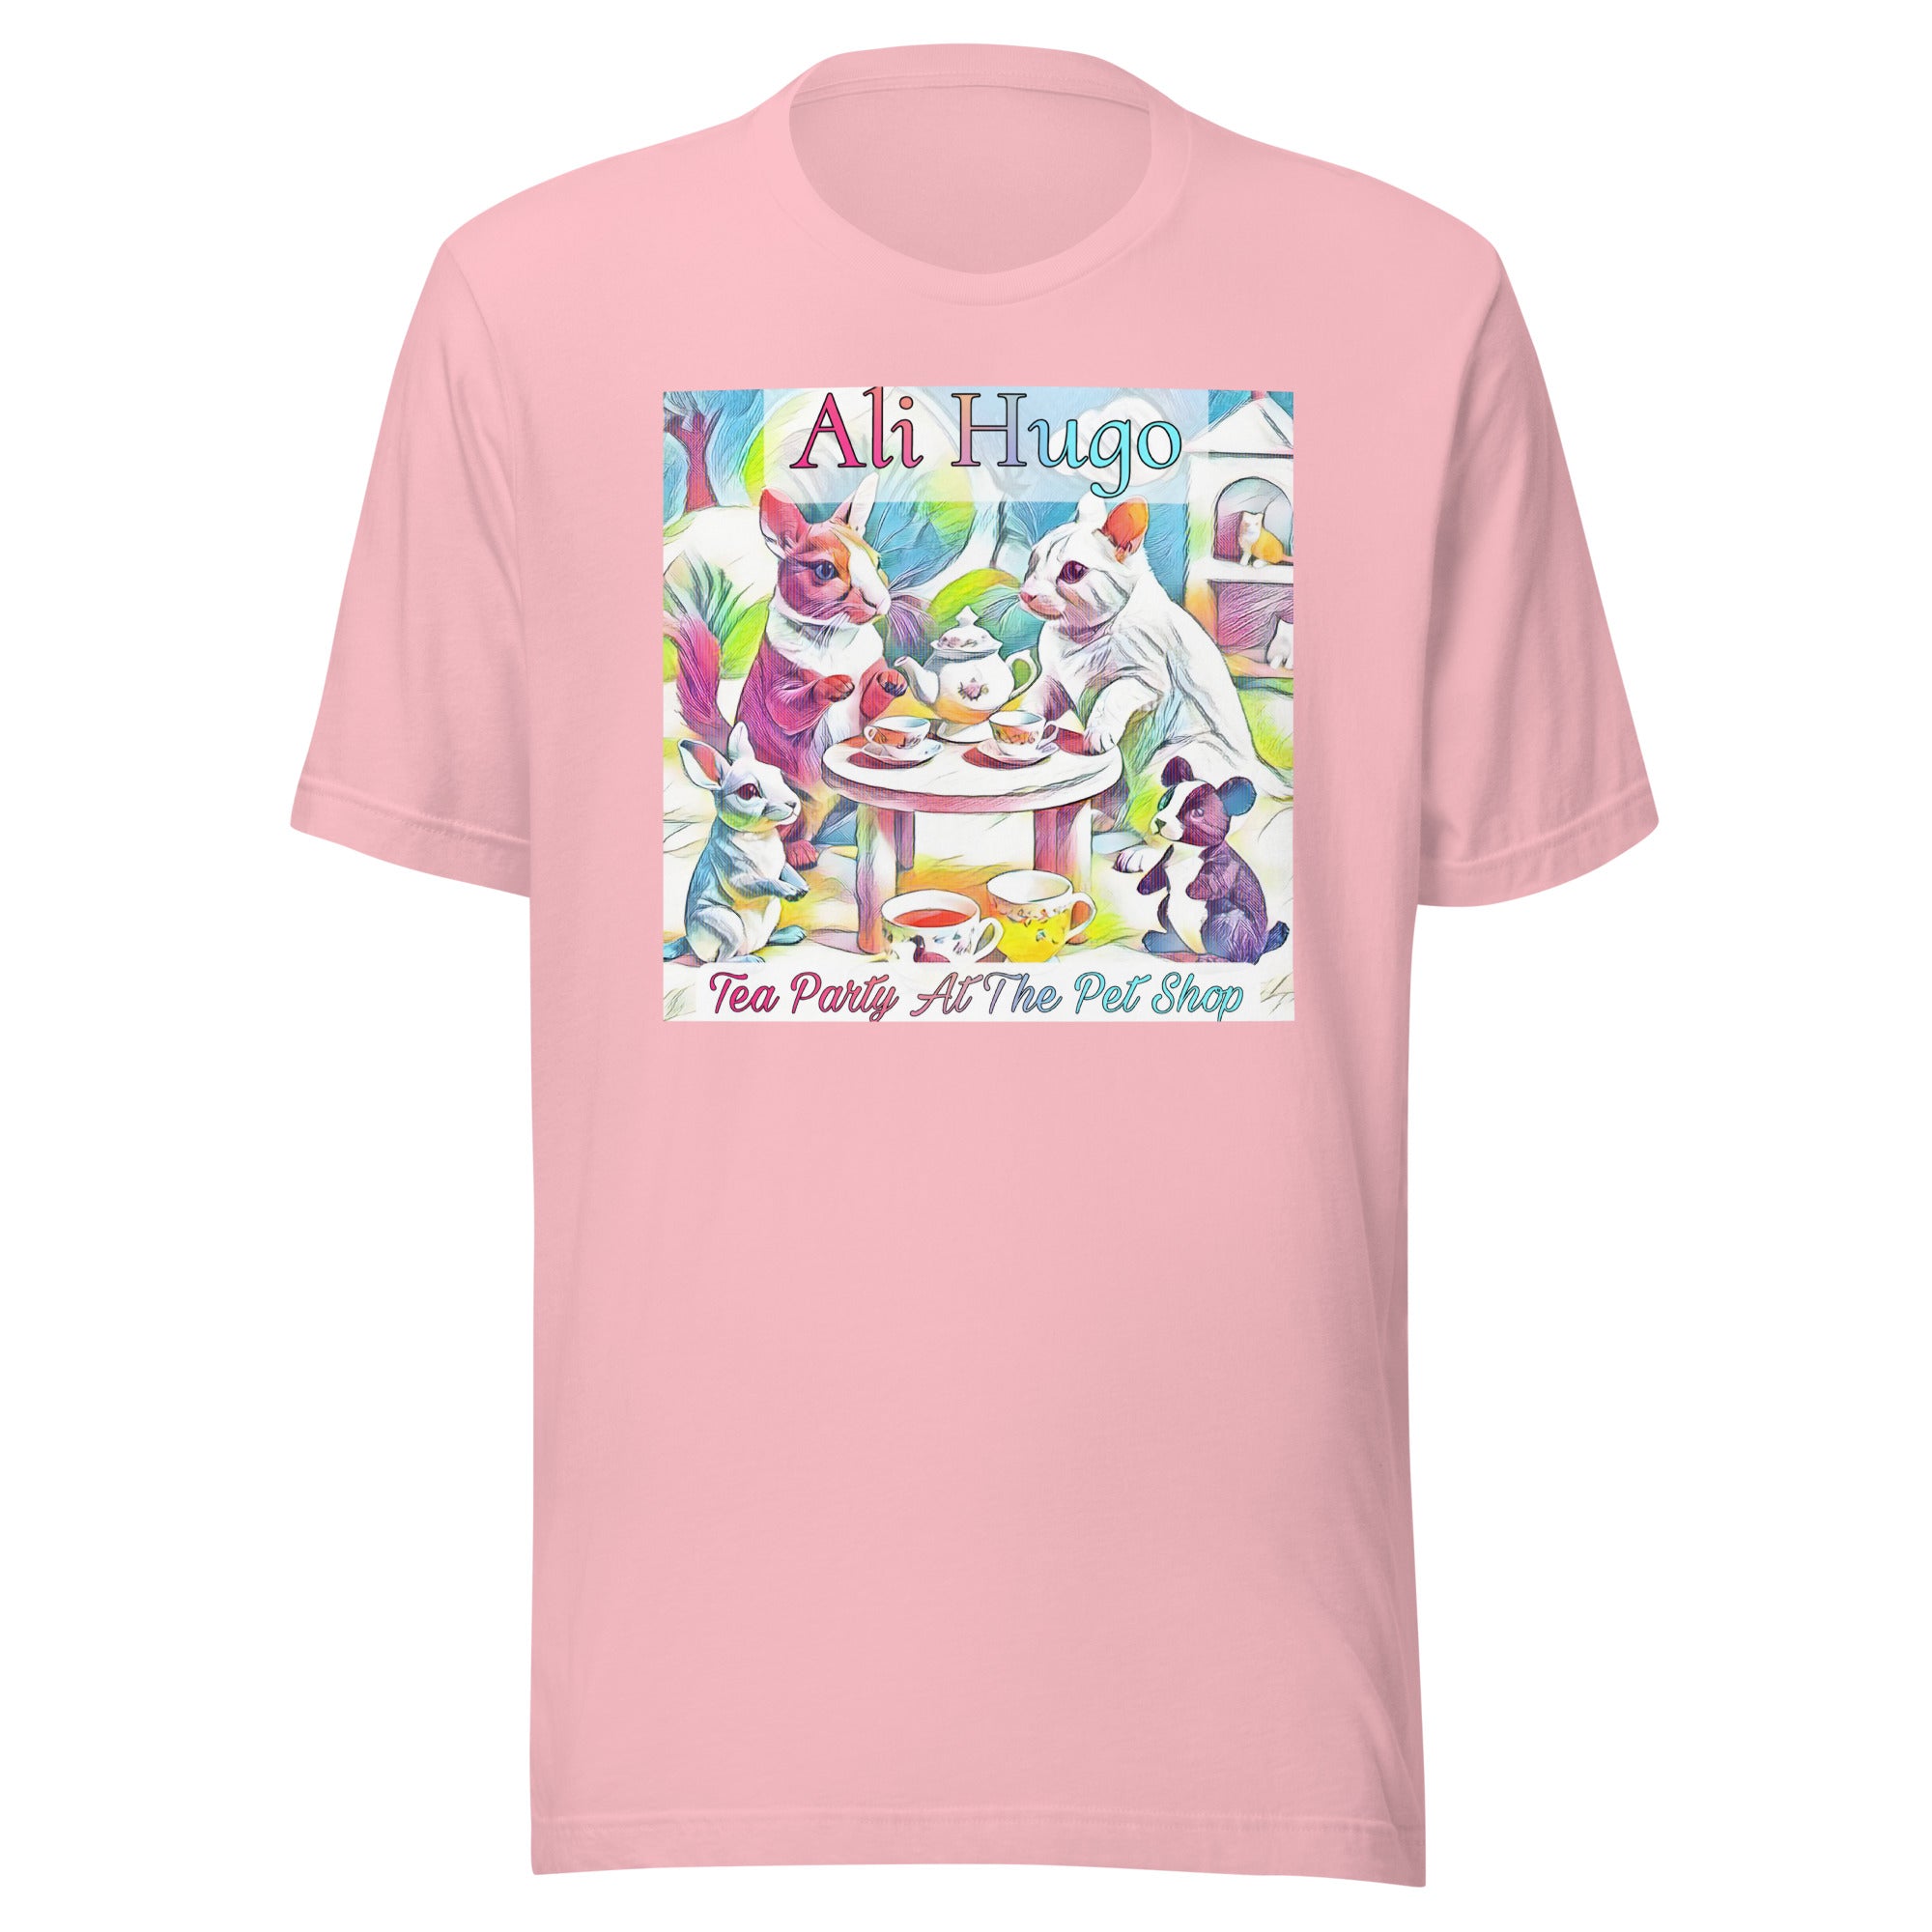 Ali Hugo - "Tea Party At The Pet Shop" - t-shirt